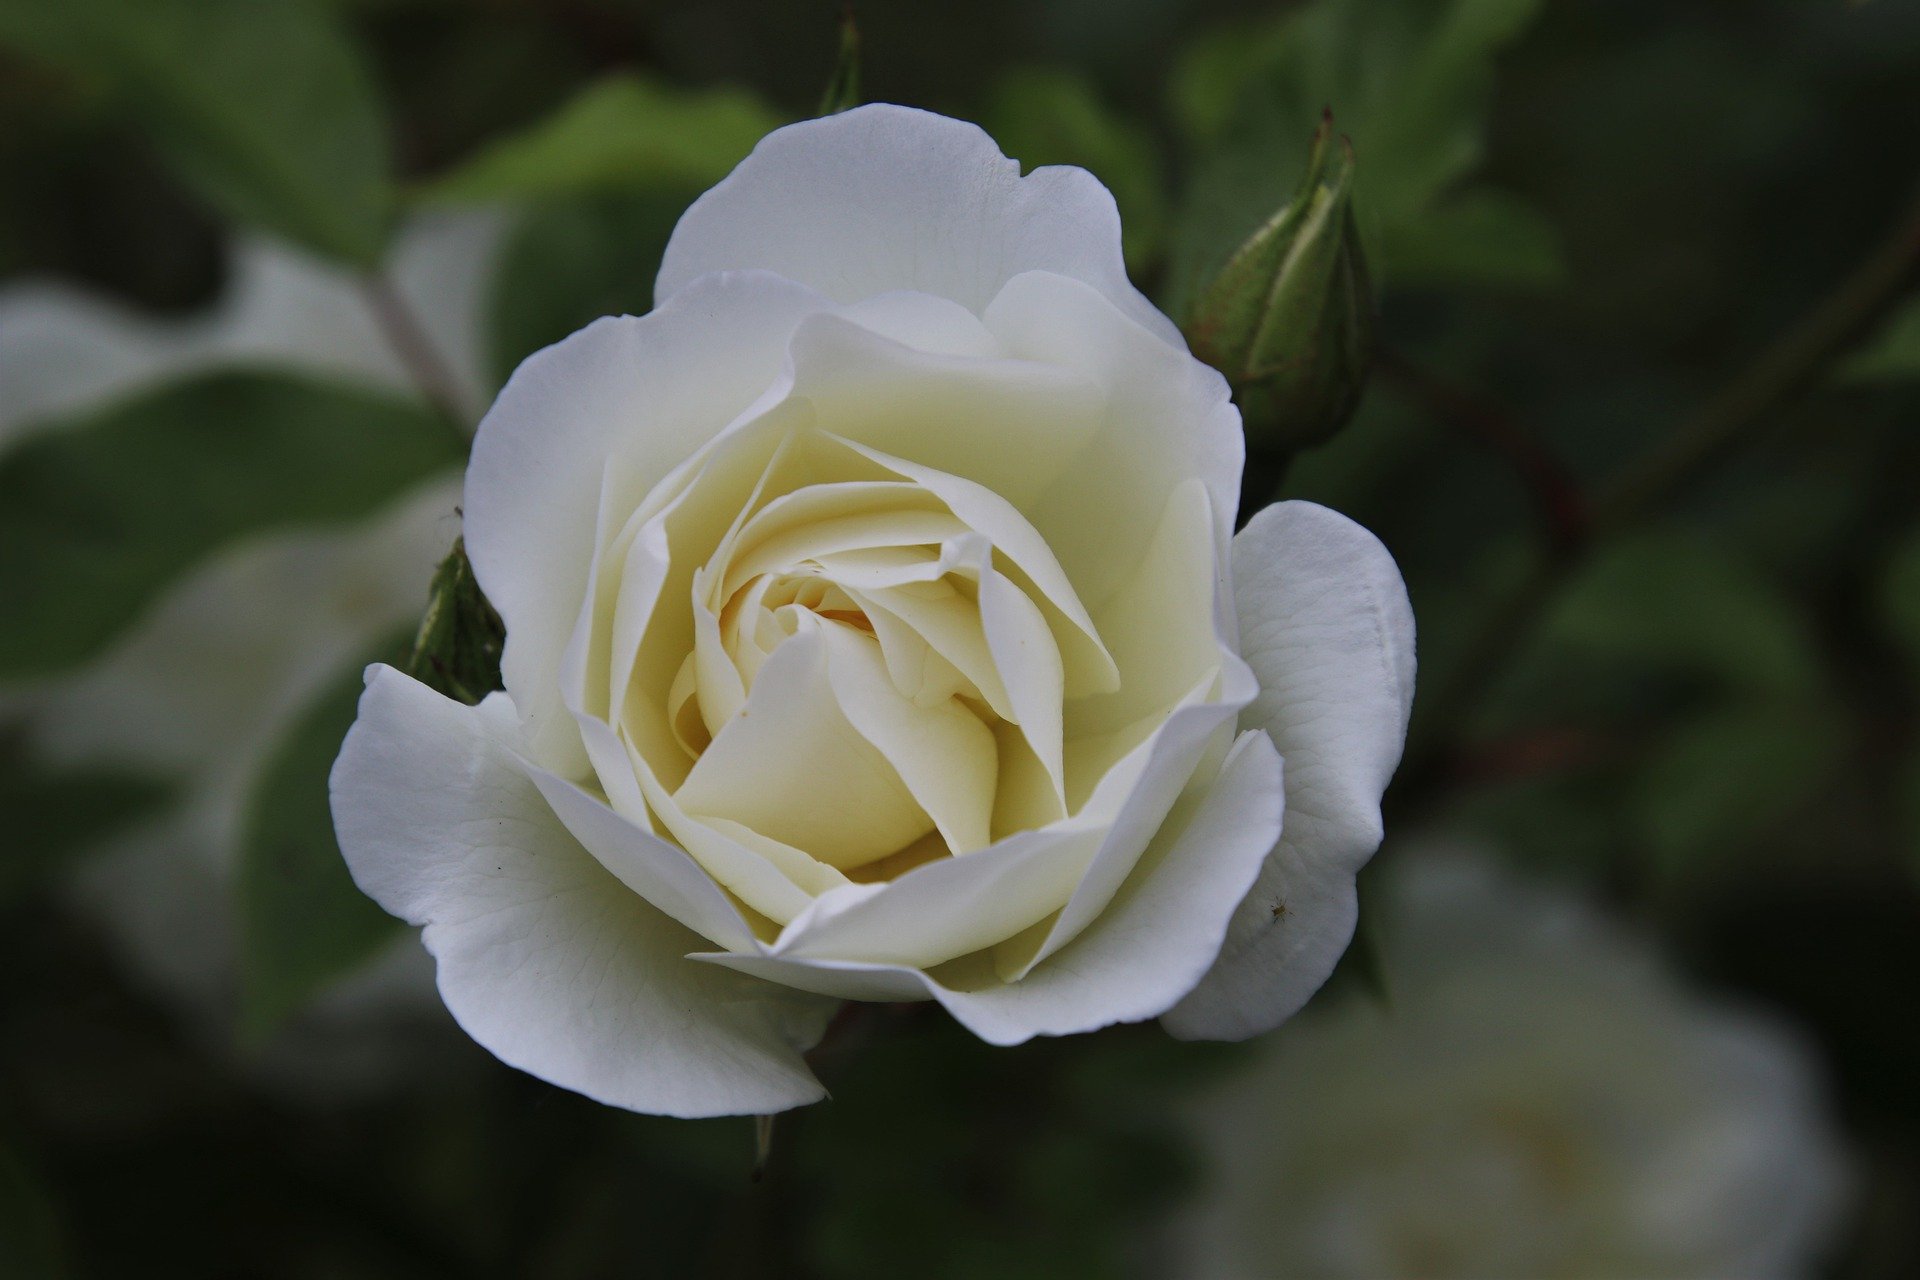 Die weiße Rose – ein willkürliches Motiv?